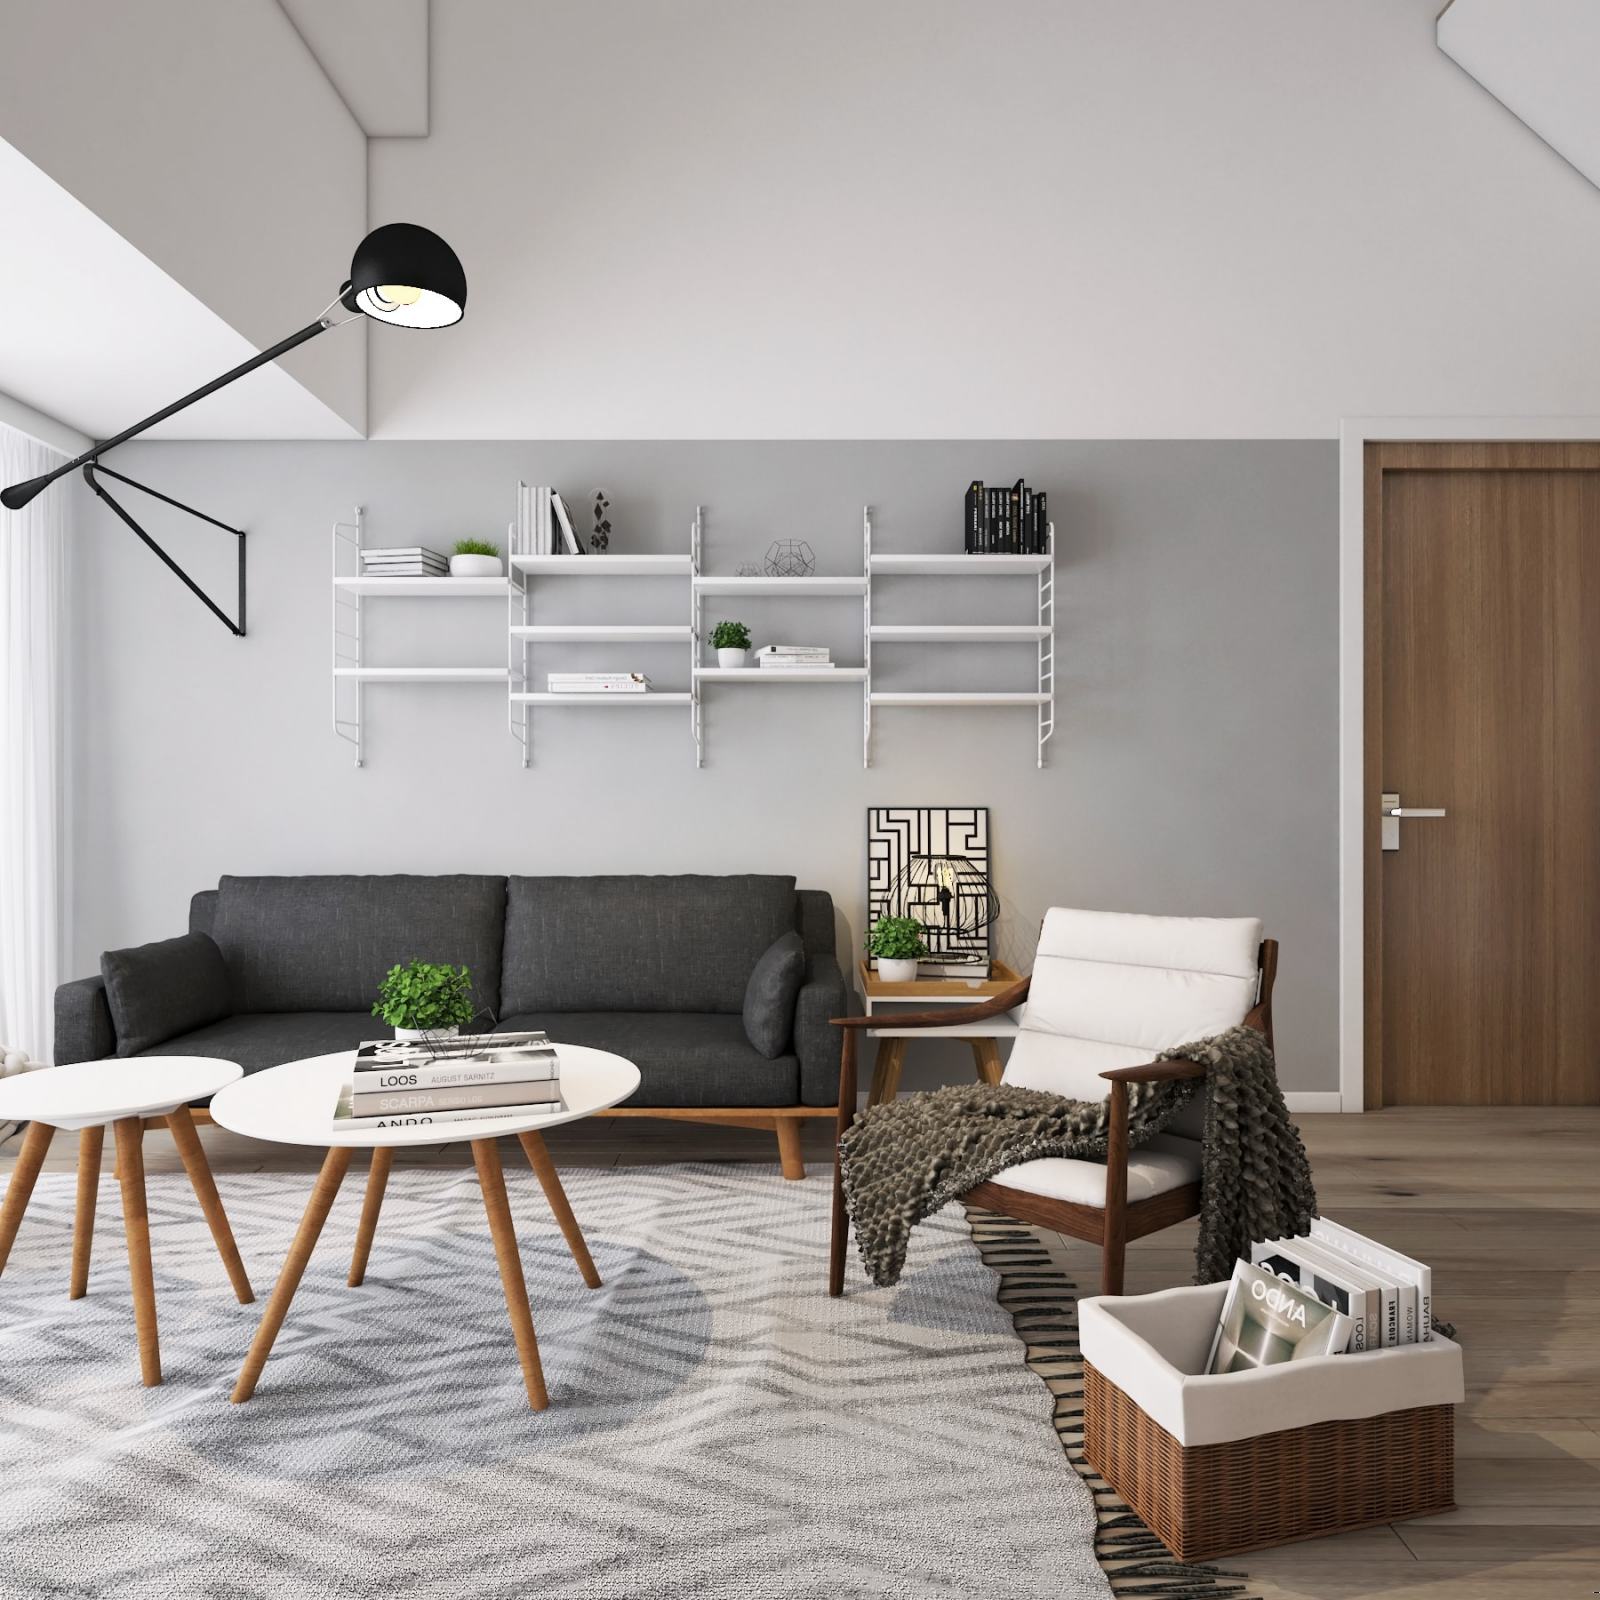 Inspirasi Dan Tips Desain Interior Apartemen Minimalis Sejasacom